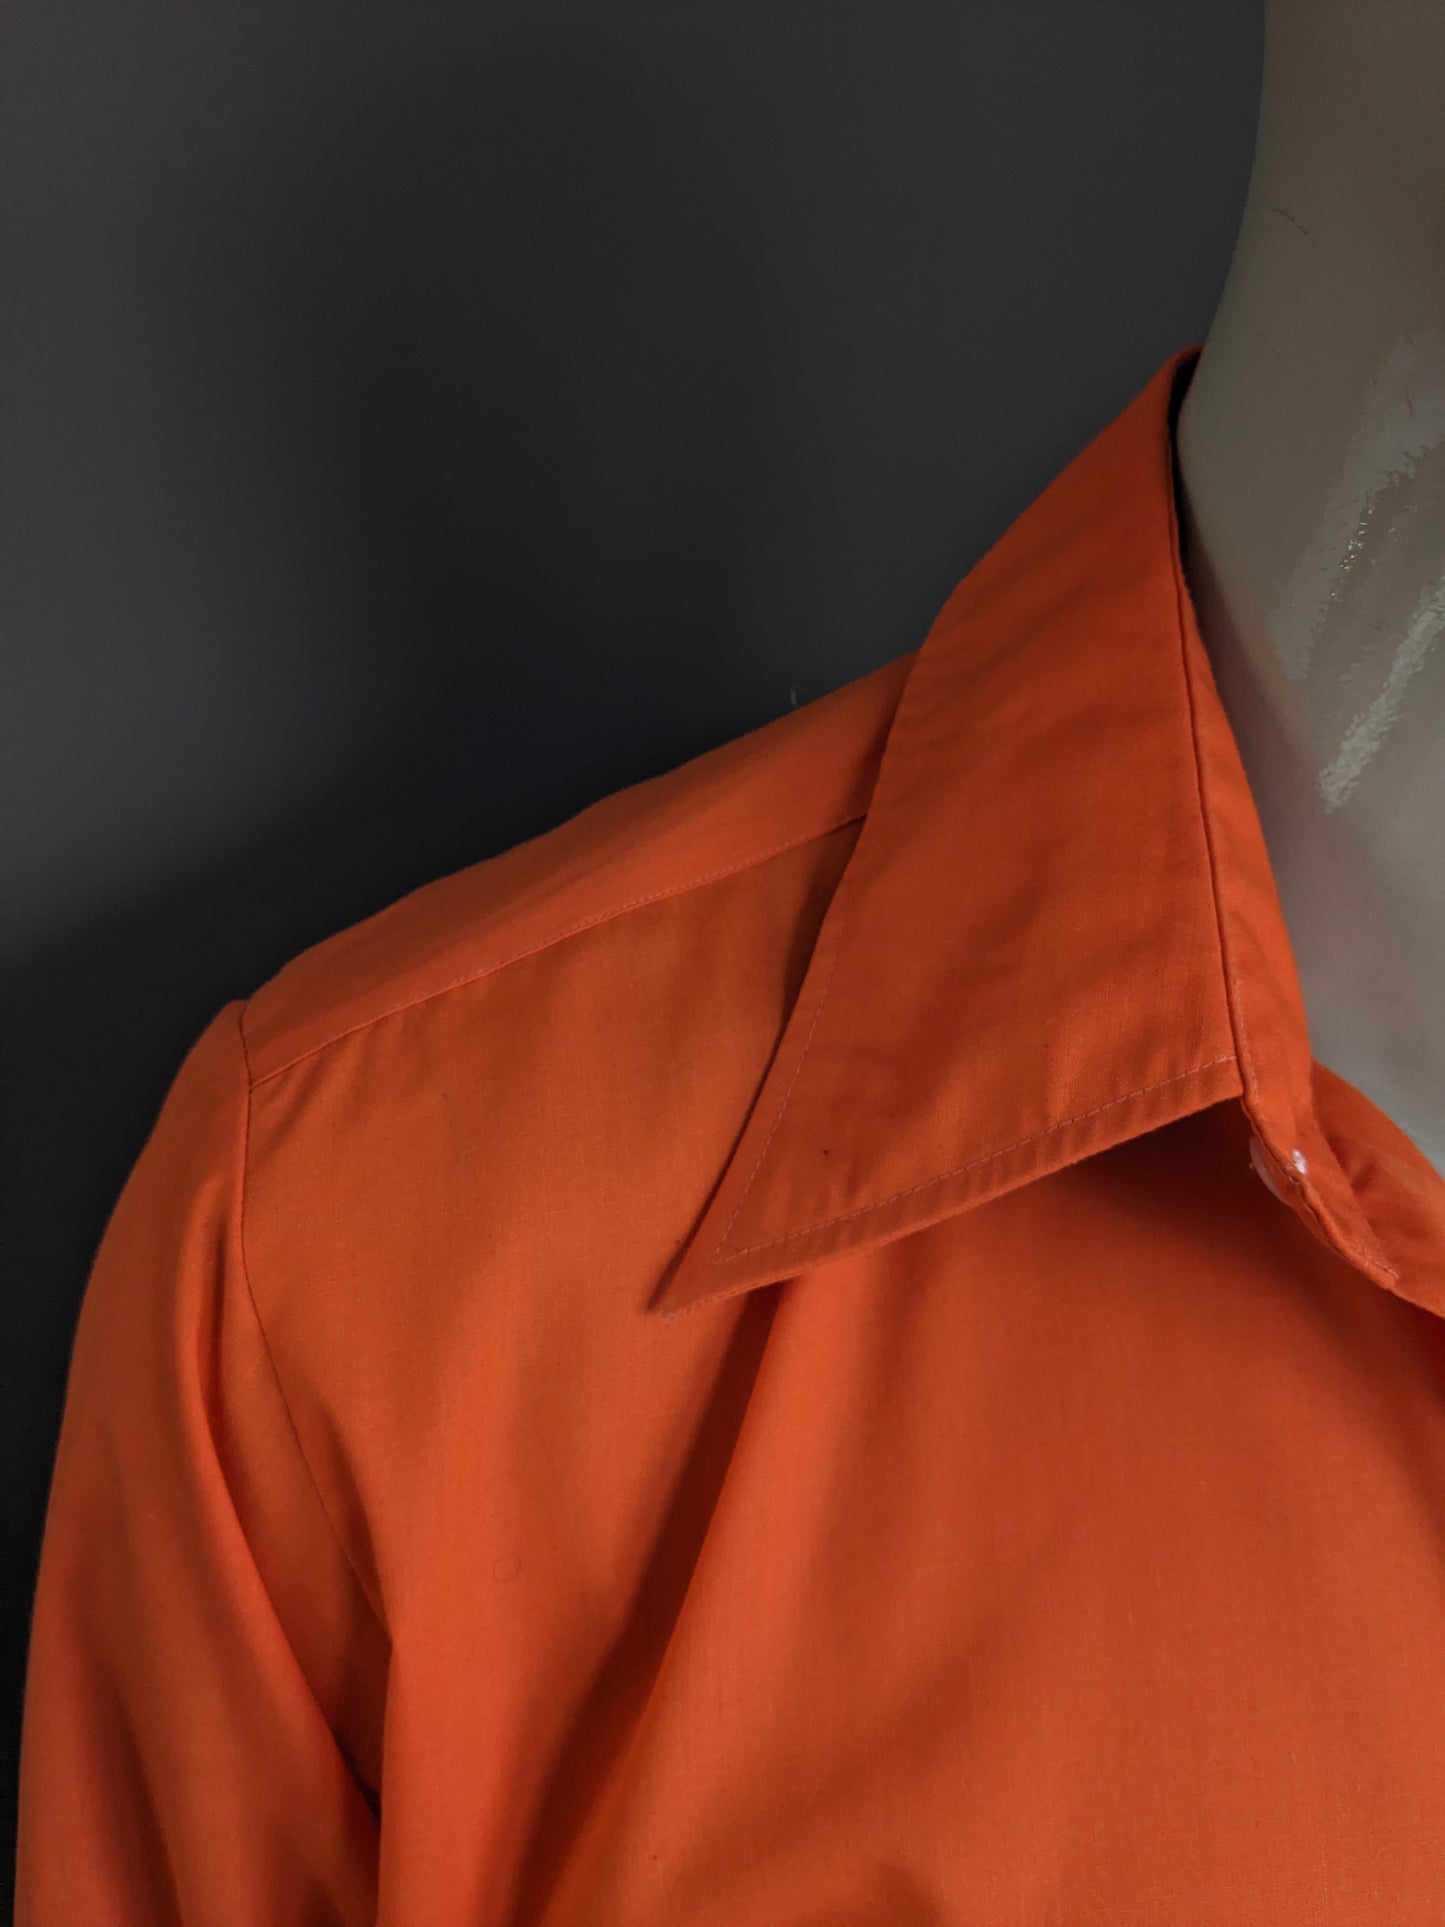 Vintage 70's Curo overhemd met puntkraag. Oranje gekleurd. Maat XL.